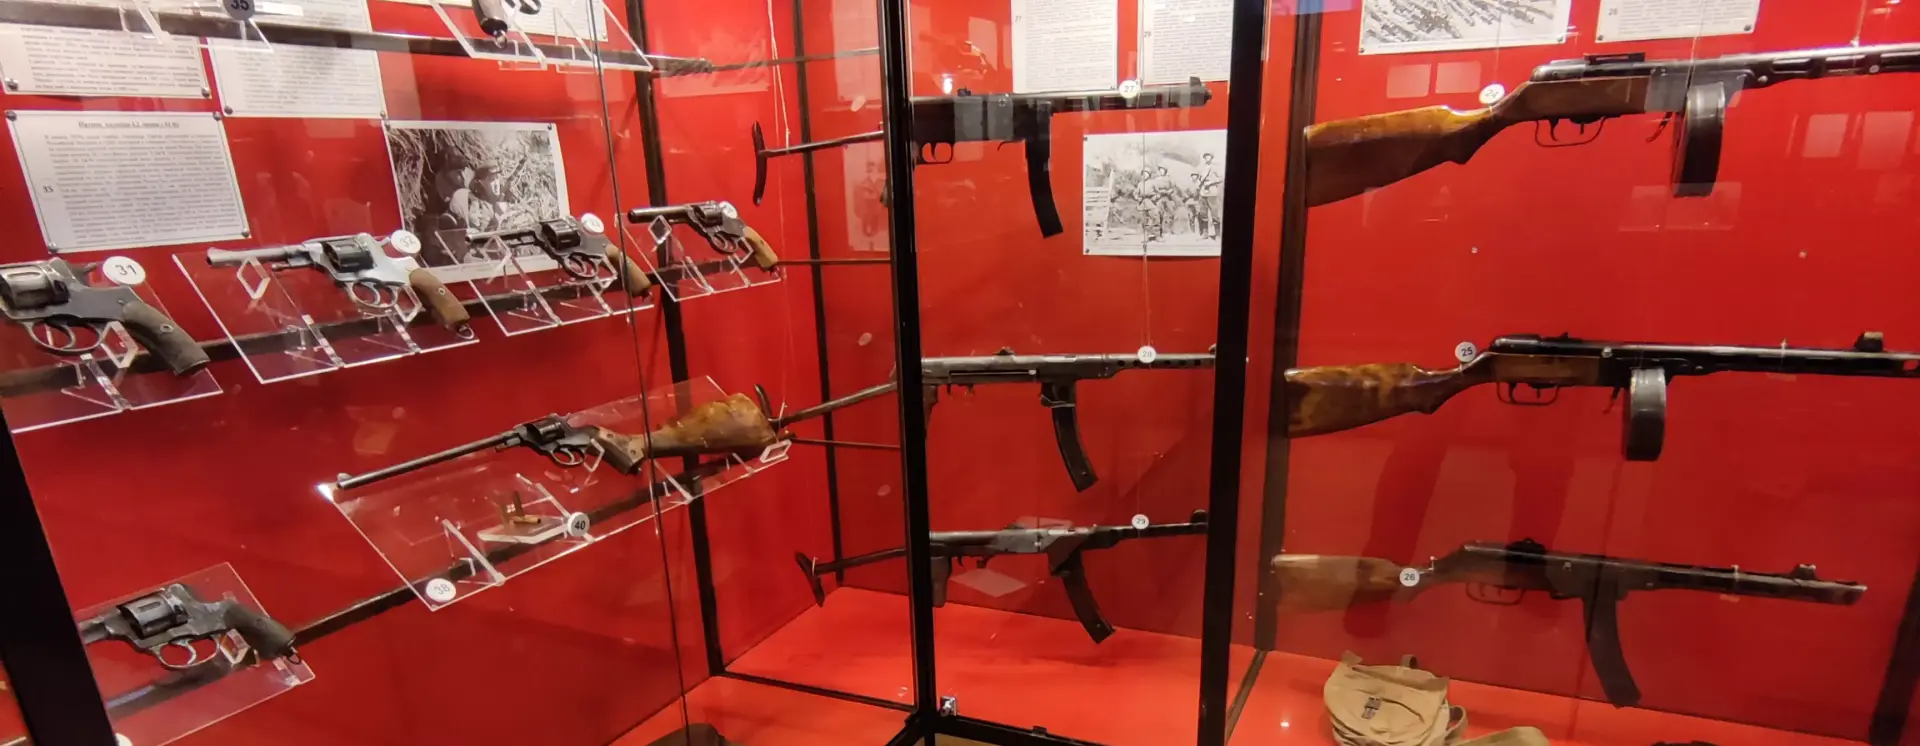 Выставка «Историческое оружие»